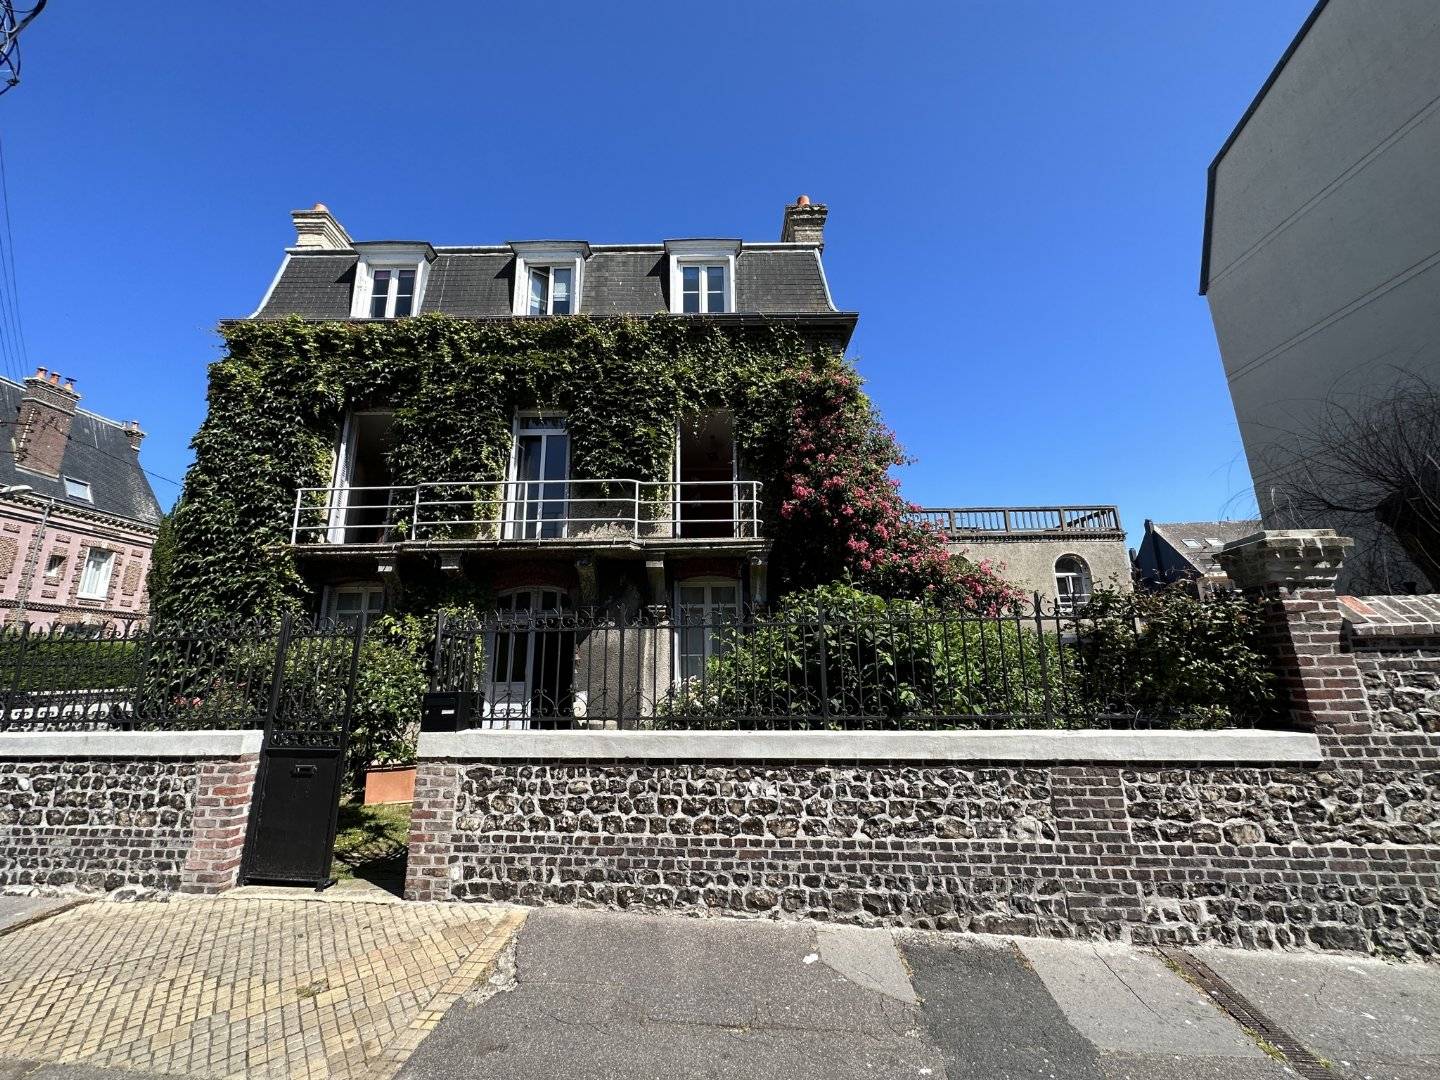 A vendre magnifique propriété située au cœur de Dieppe, en Normandie.